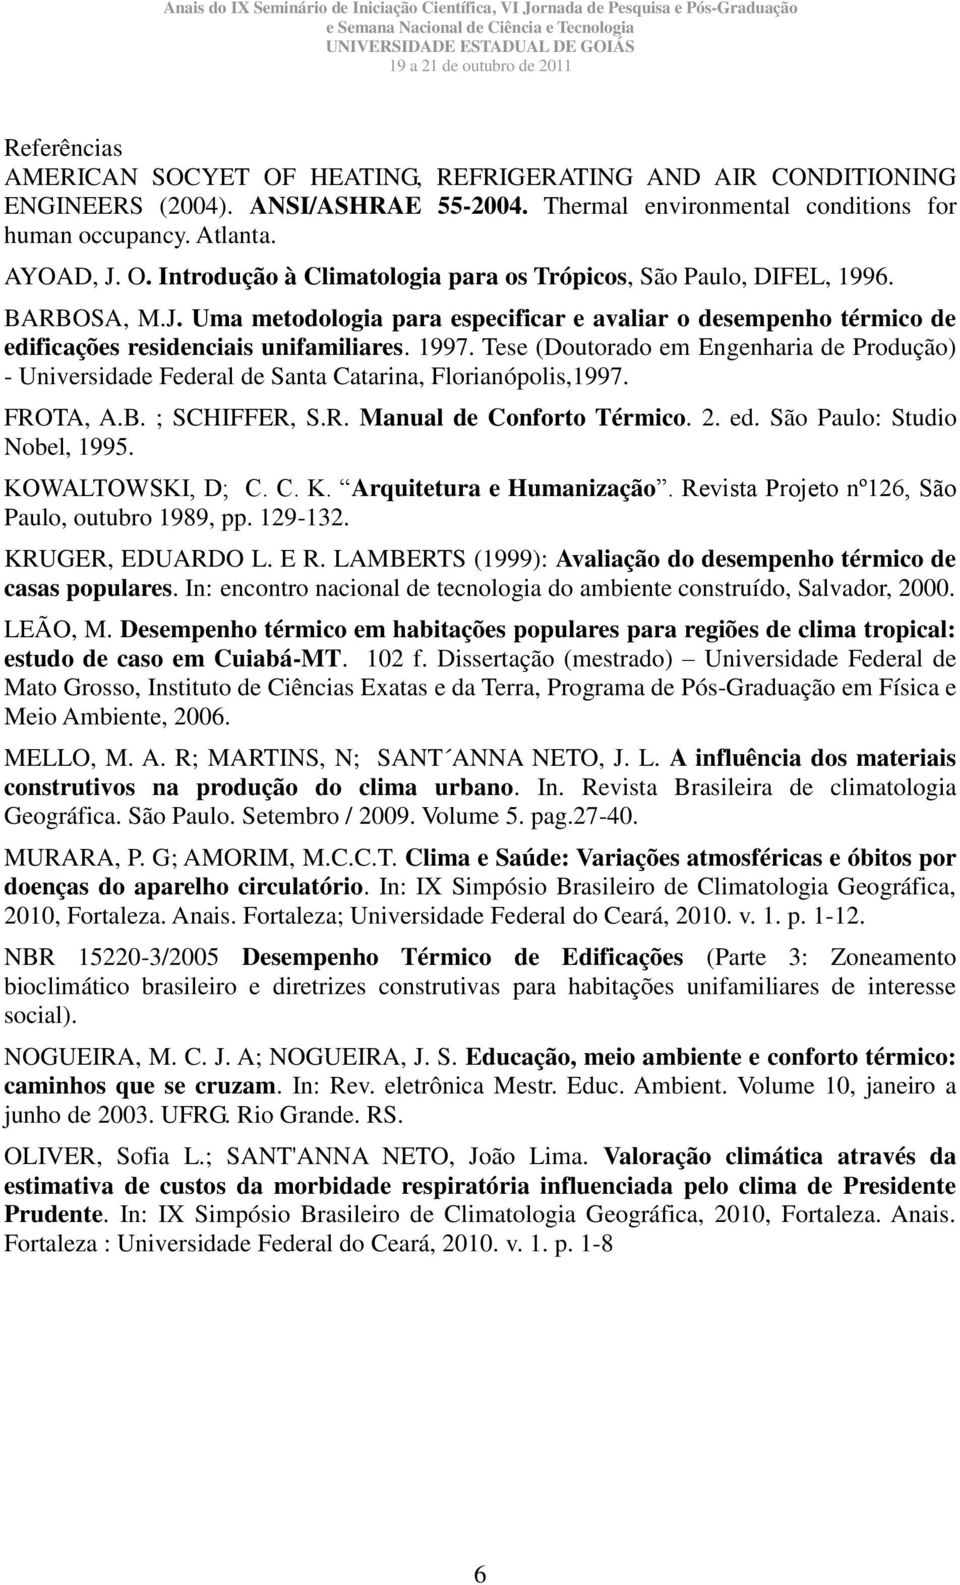 Tese (Doutorado em Engenharia de Produção) - Universidade Federal de Santa Catarina, Florianópolis,1997. FROTA, A.B. ; SCHIFFER, S.R. Manual de Conforto Térmico. 2. ed. São Paulo: Studio Nobel, 1995.